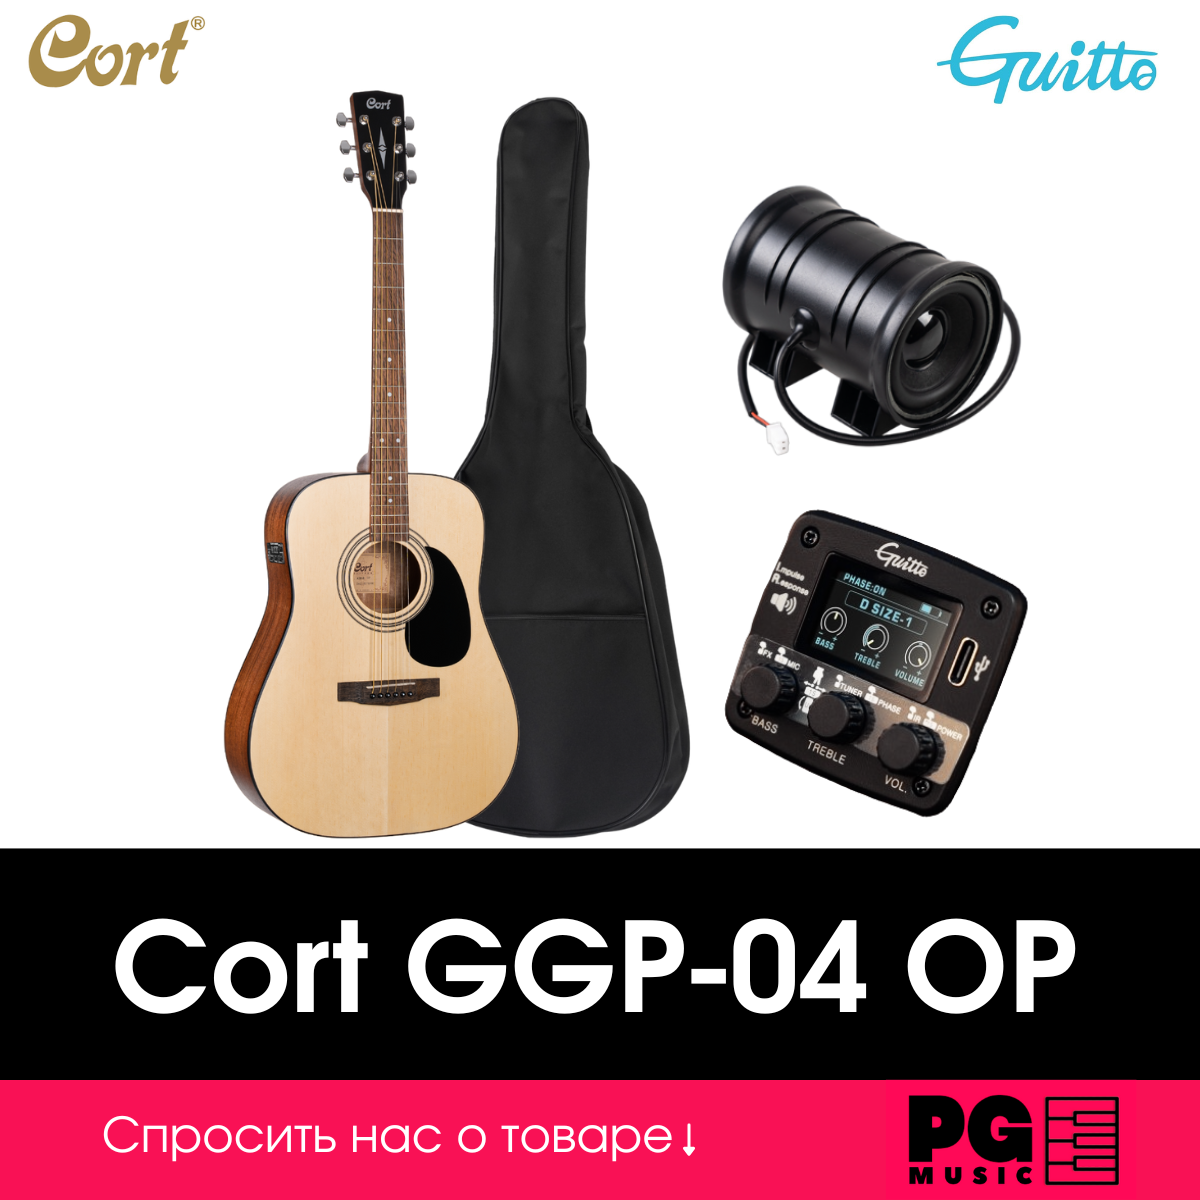 Трансакустическая гитара Cort GGP-04 OP